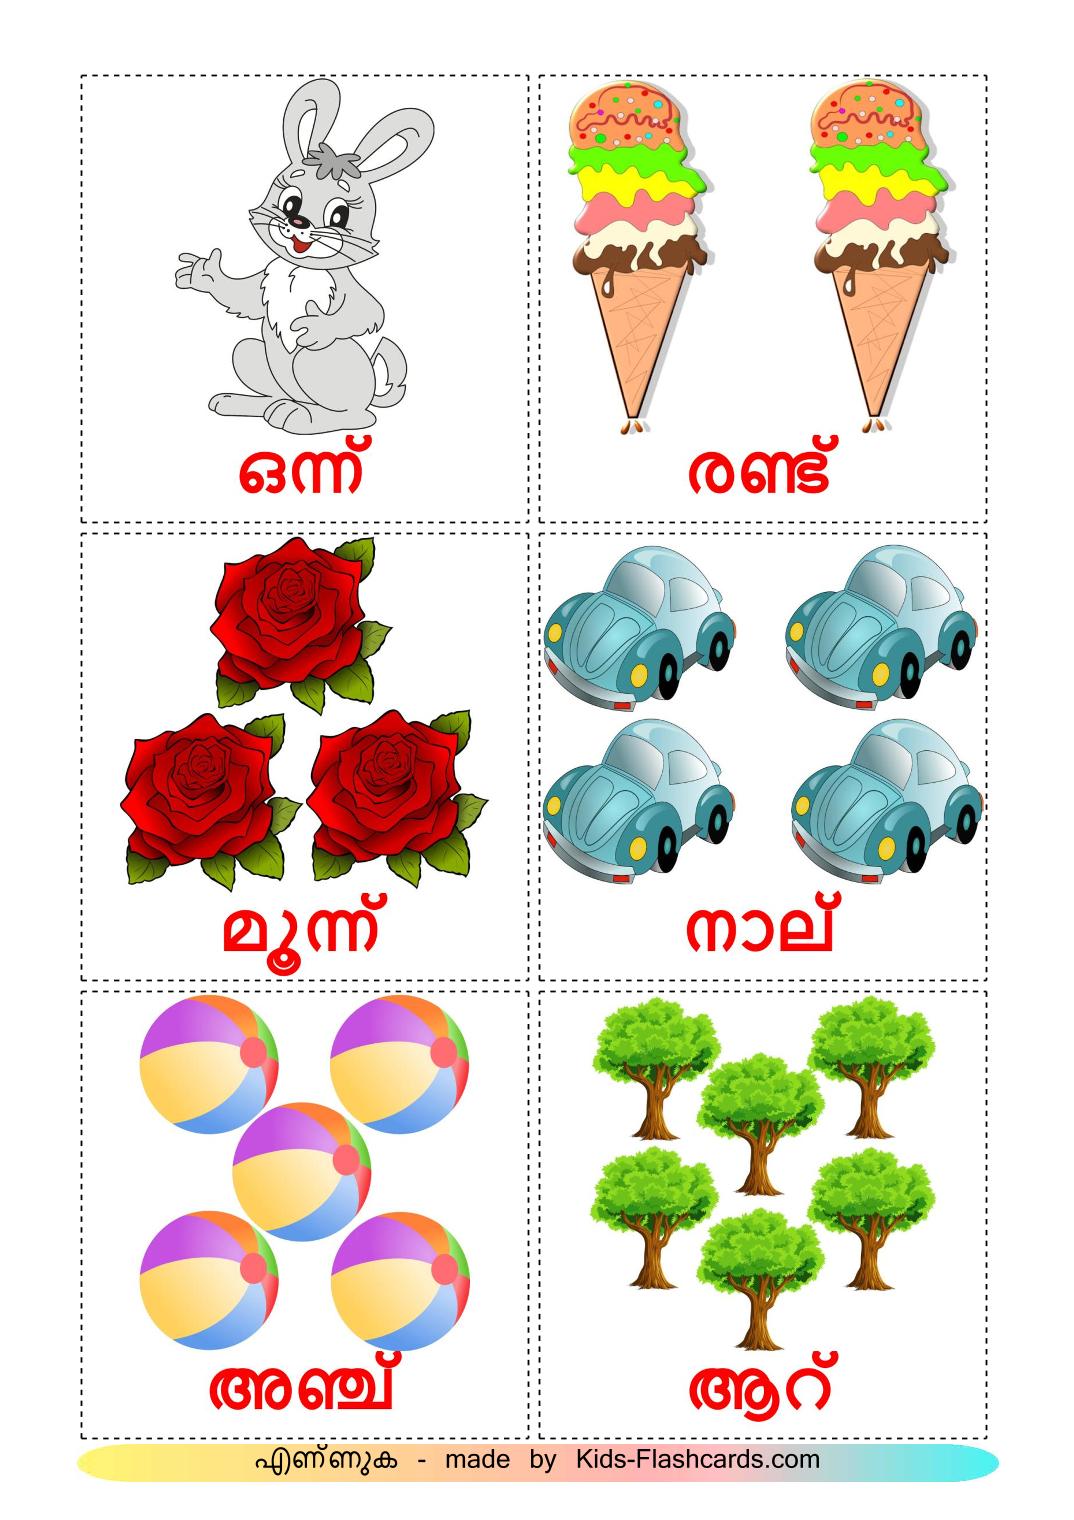 Het tellen - 10 gratis printbare malayalame kaarten